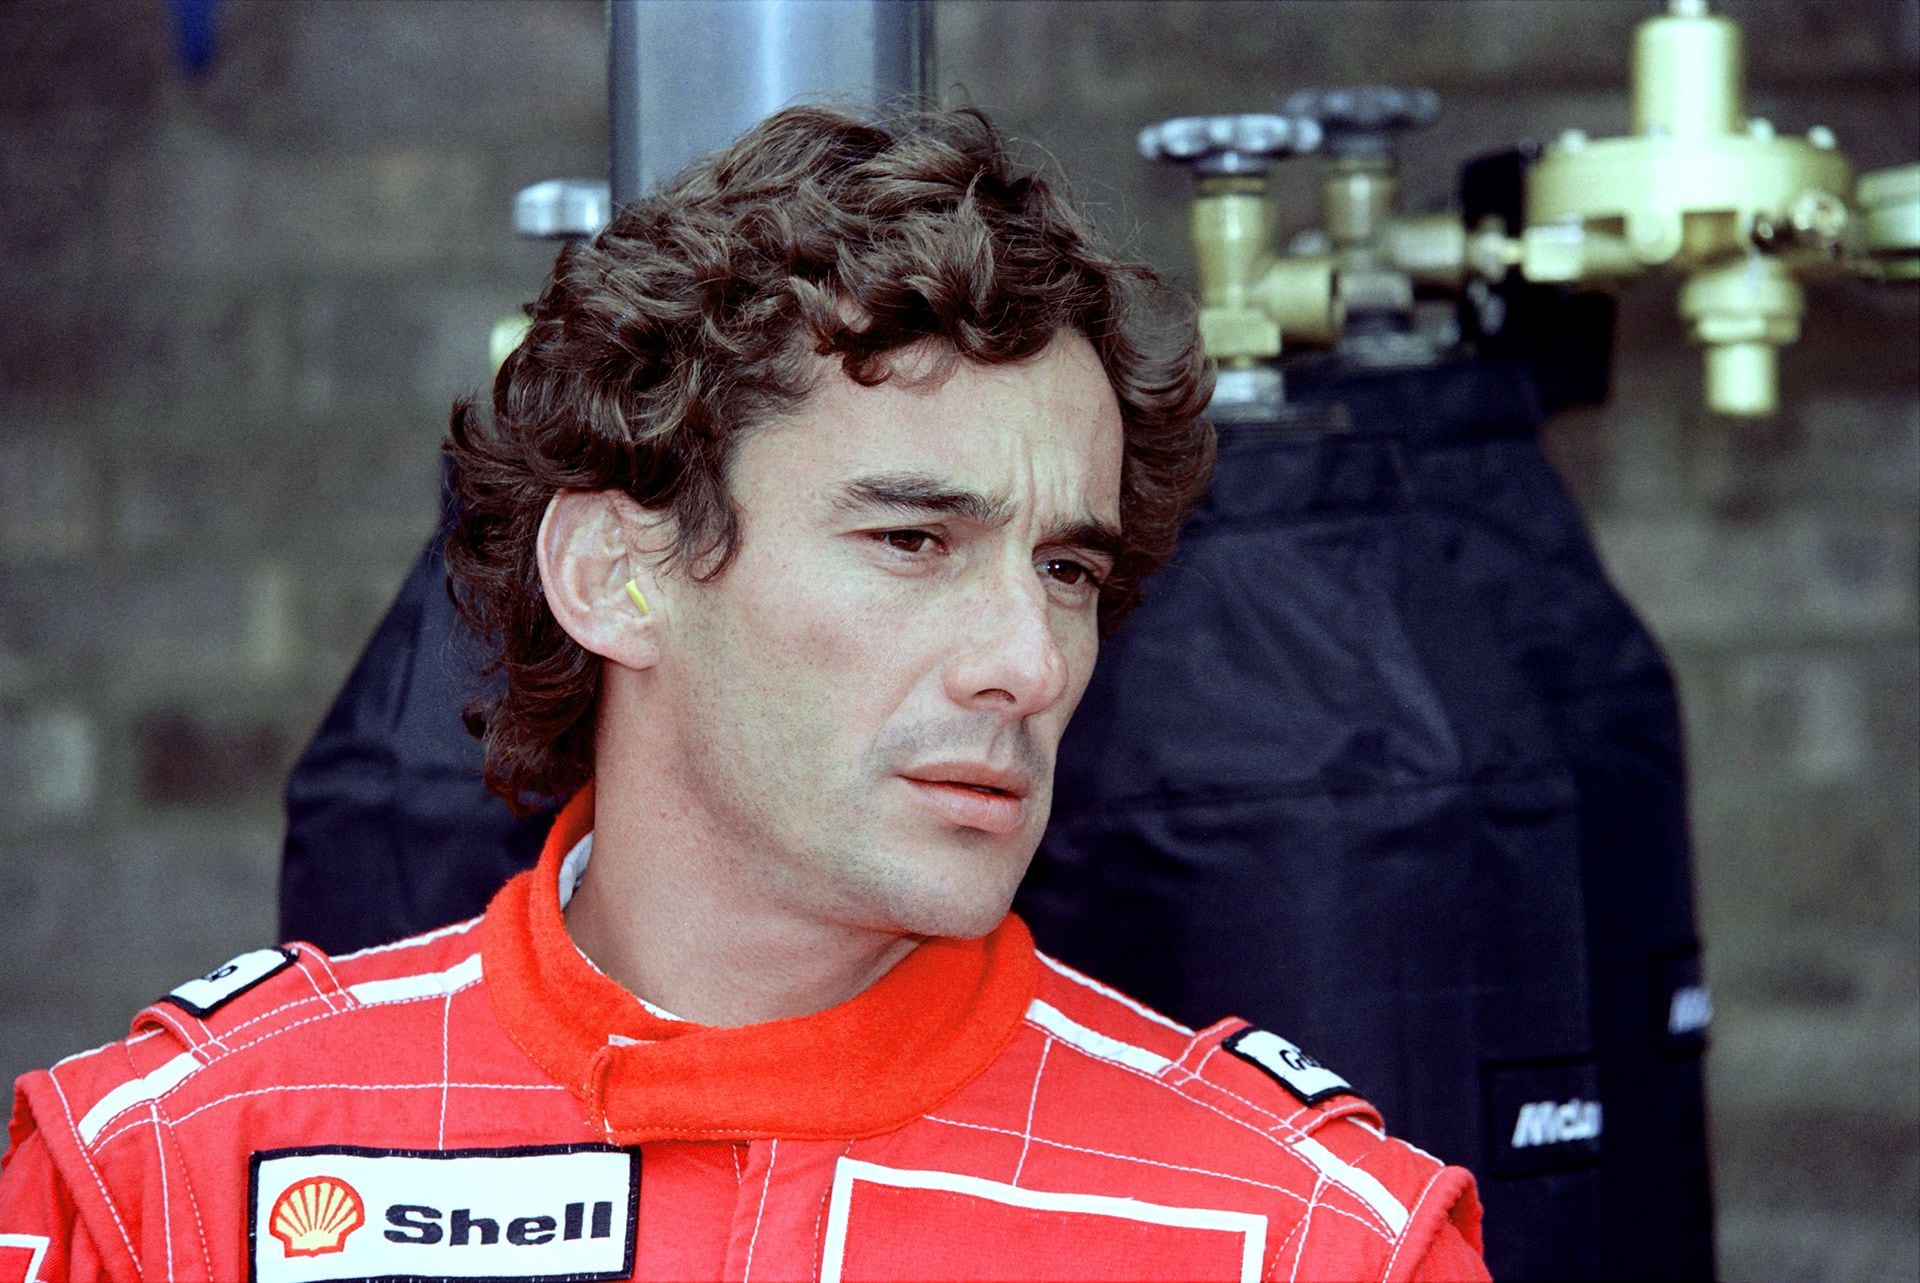 Senna compitió en la Fórmula 1 desde 1984 hasta 1994, él representó a diversos equipos, incluidos Toleman, Lotus, McLaren y Williams. (Créditos: Jean-Loup GAUTREAU/AFP)